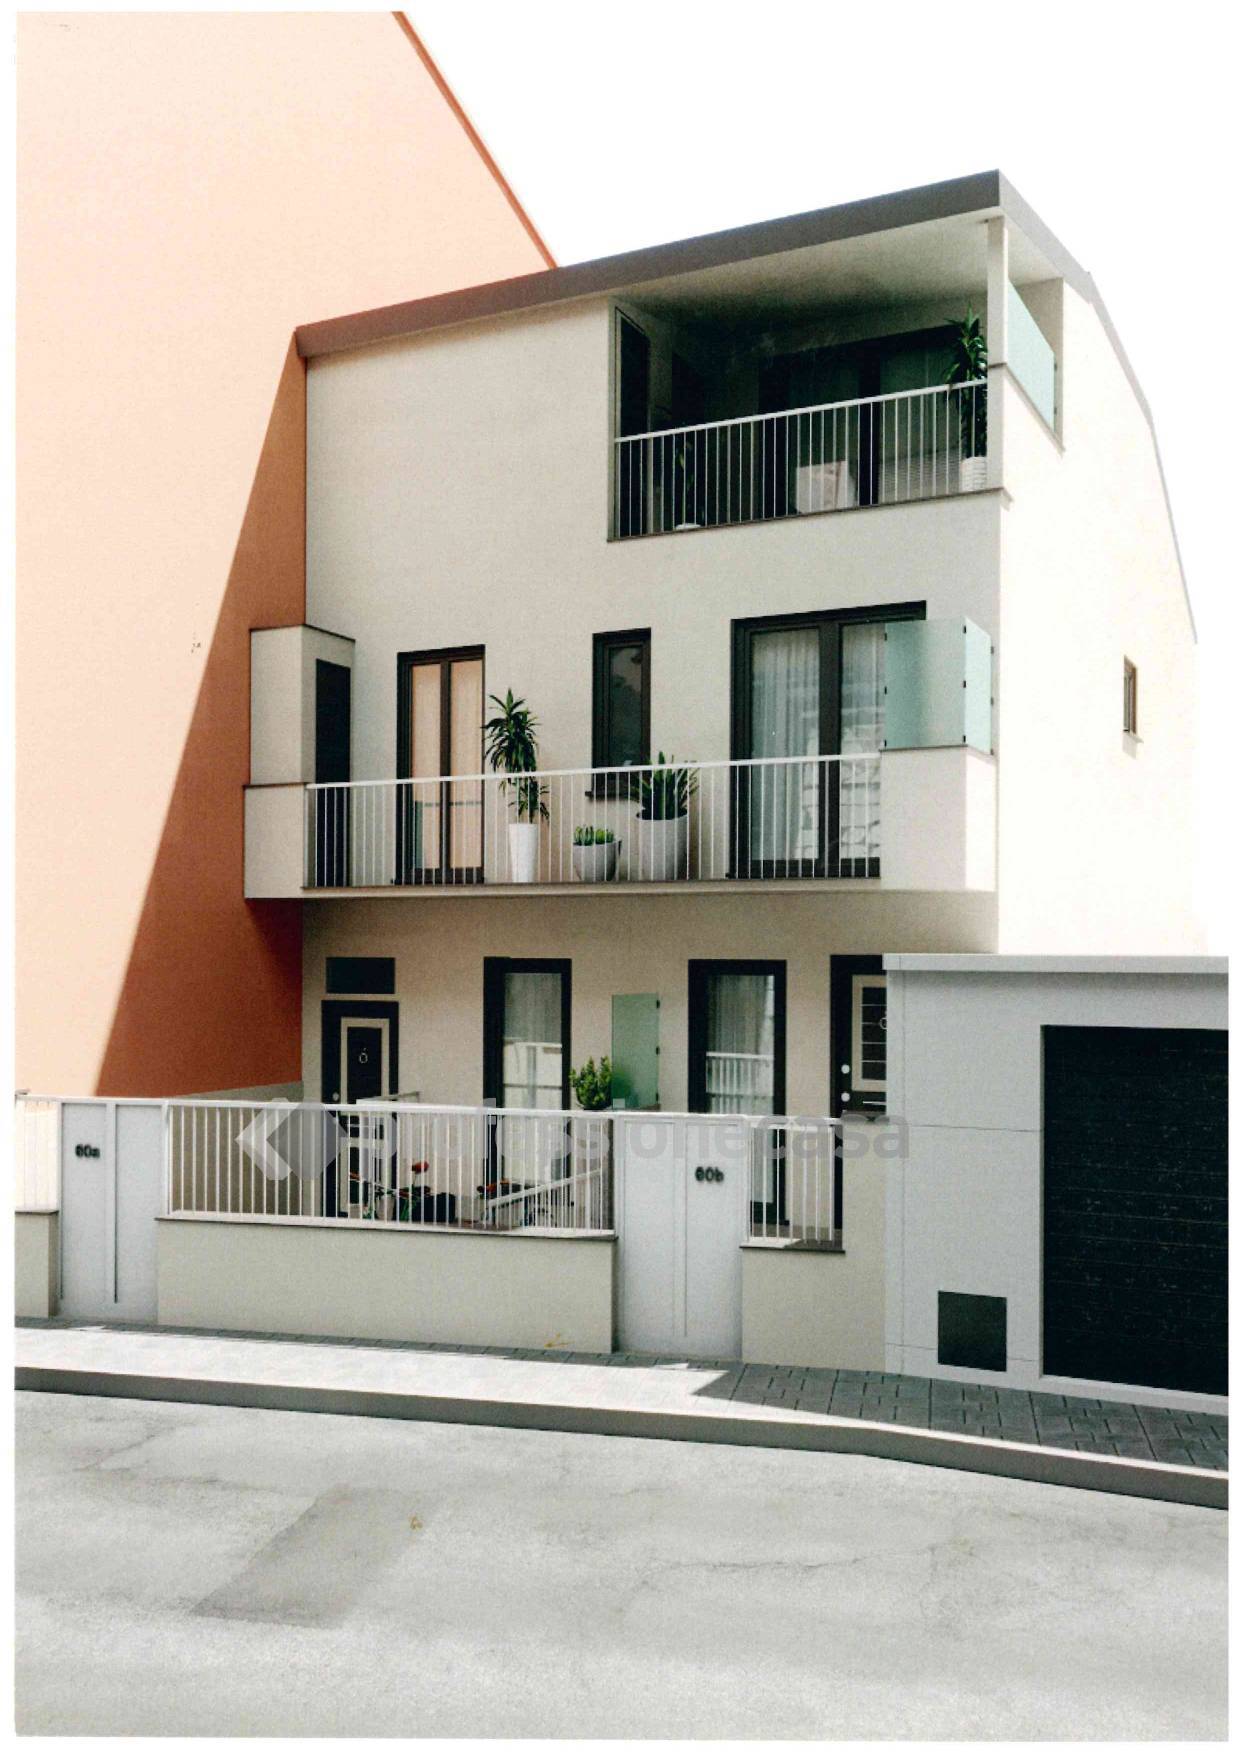 Foto - Appartamento In Vendita Civitanova Marche (mc)